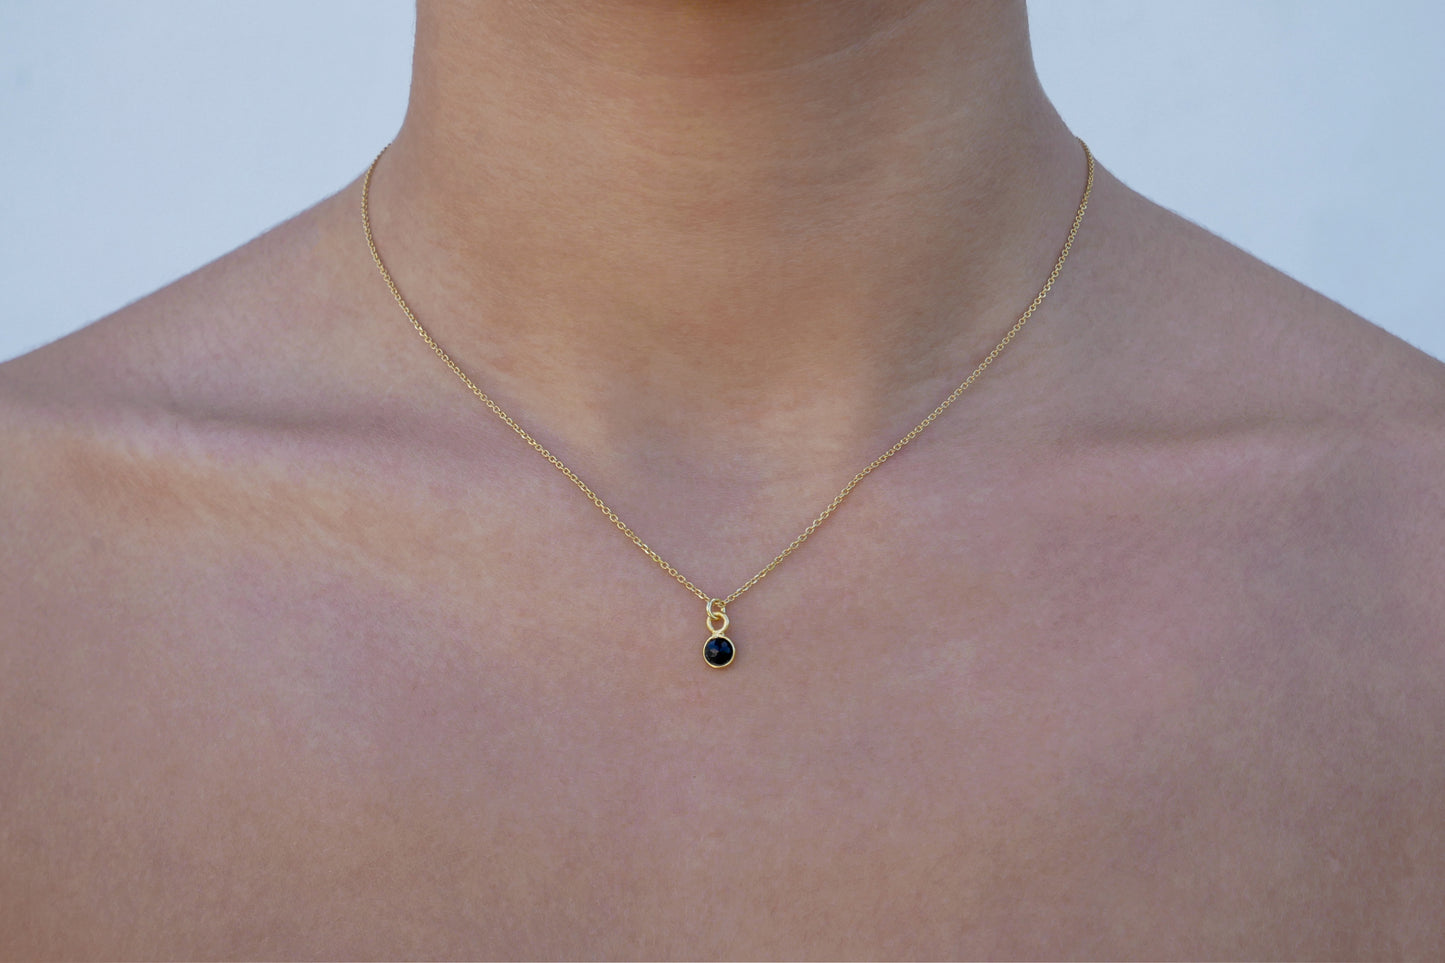 Tiny onyx pendant